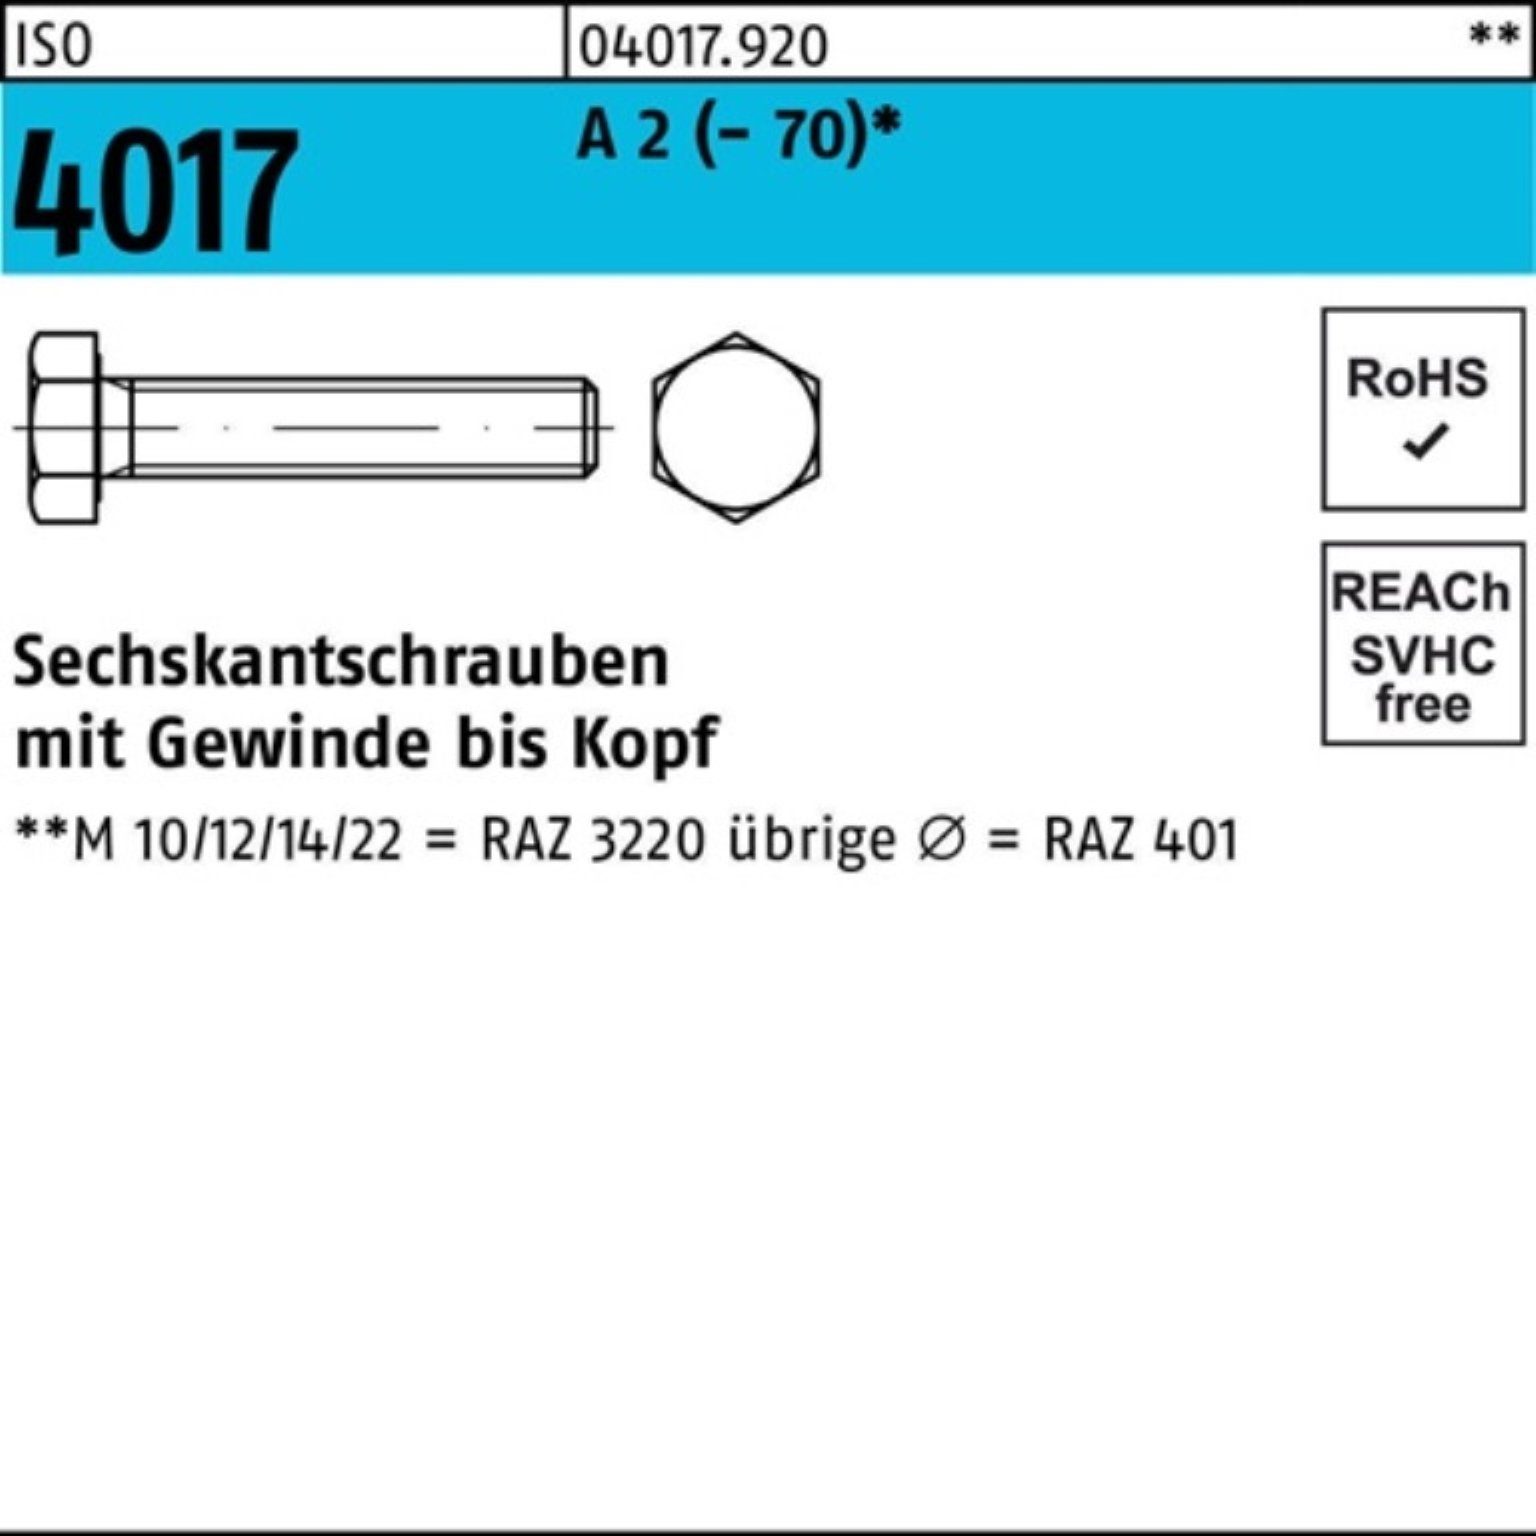 (70) VG 2 Pack M27x Sechskantschraube Stück Sechskantschraube Bufab 100er 130 A 4017 ISO 1